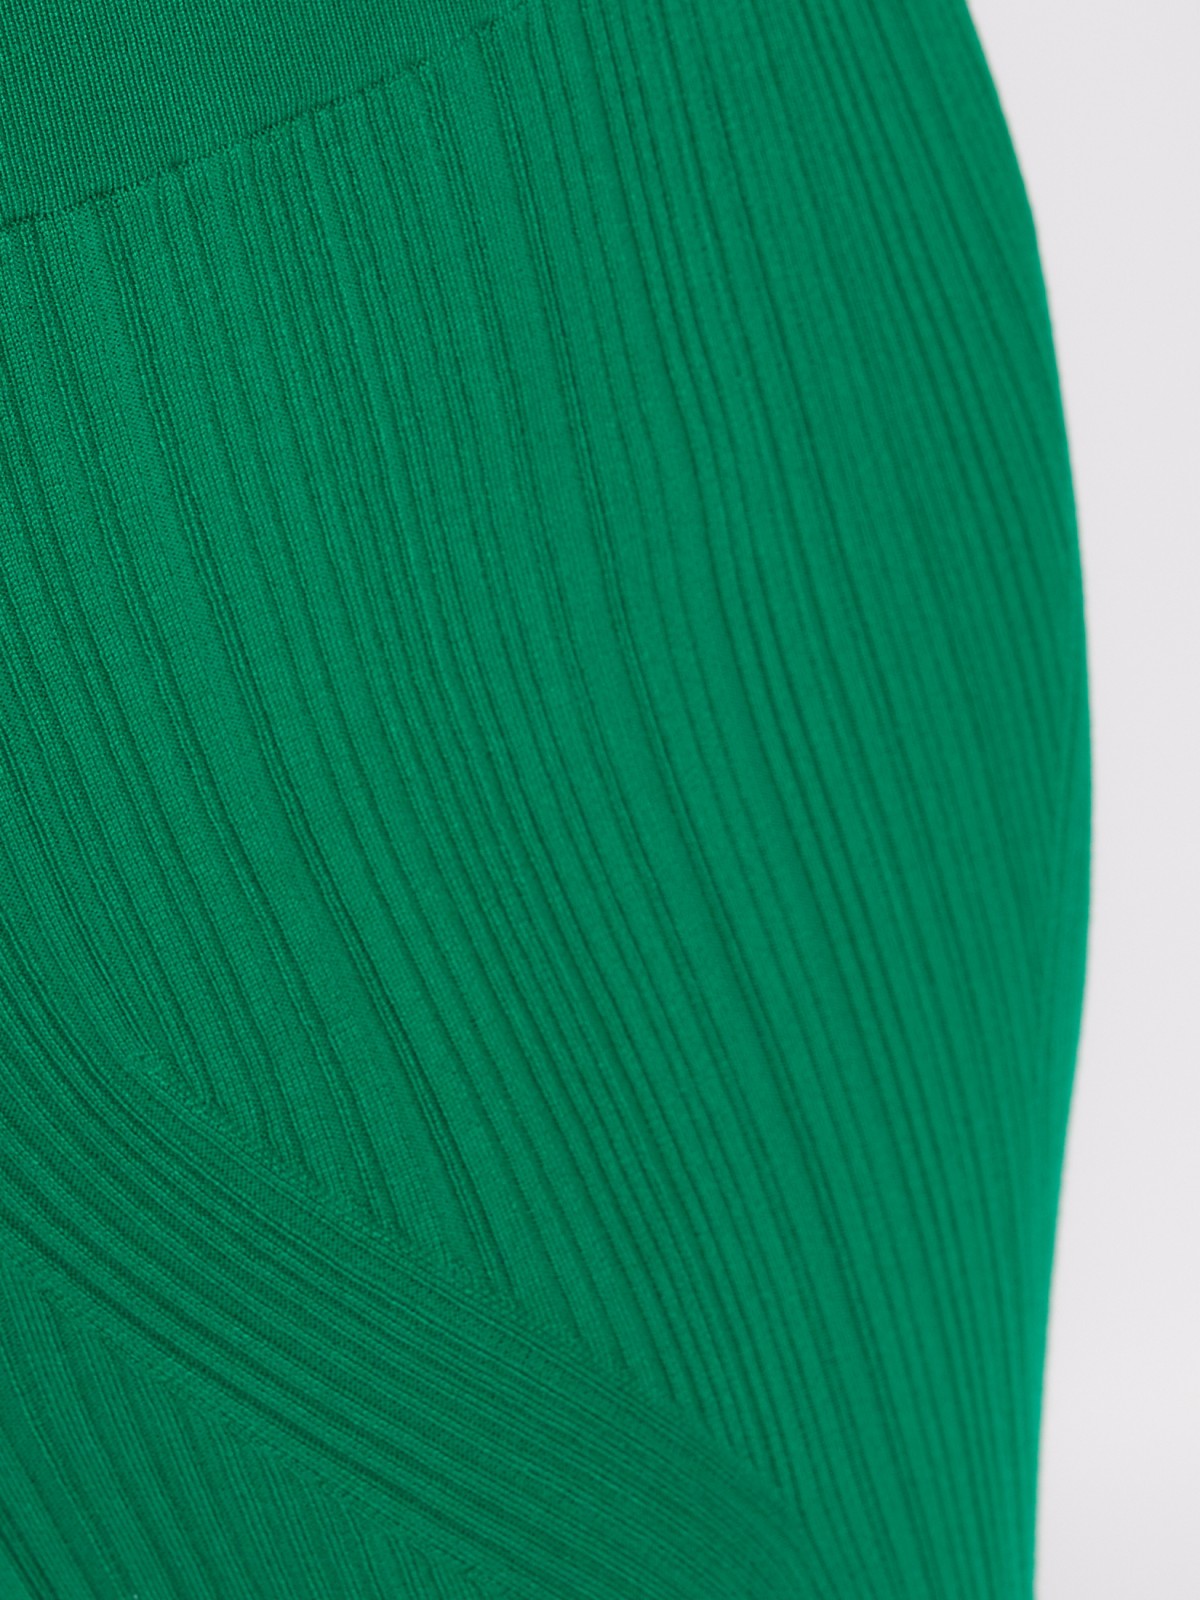 Трикотажная юбка-карандаш длины миди на резинке zolla 024217701031, цвет зеленый, размер L - фото 4